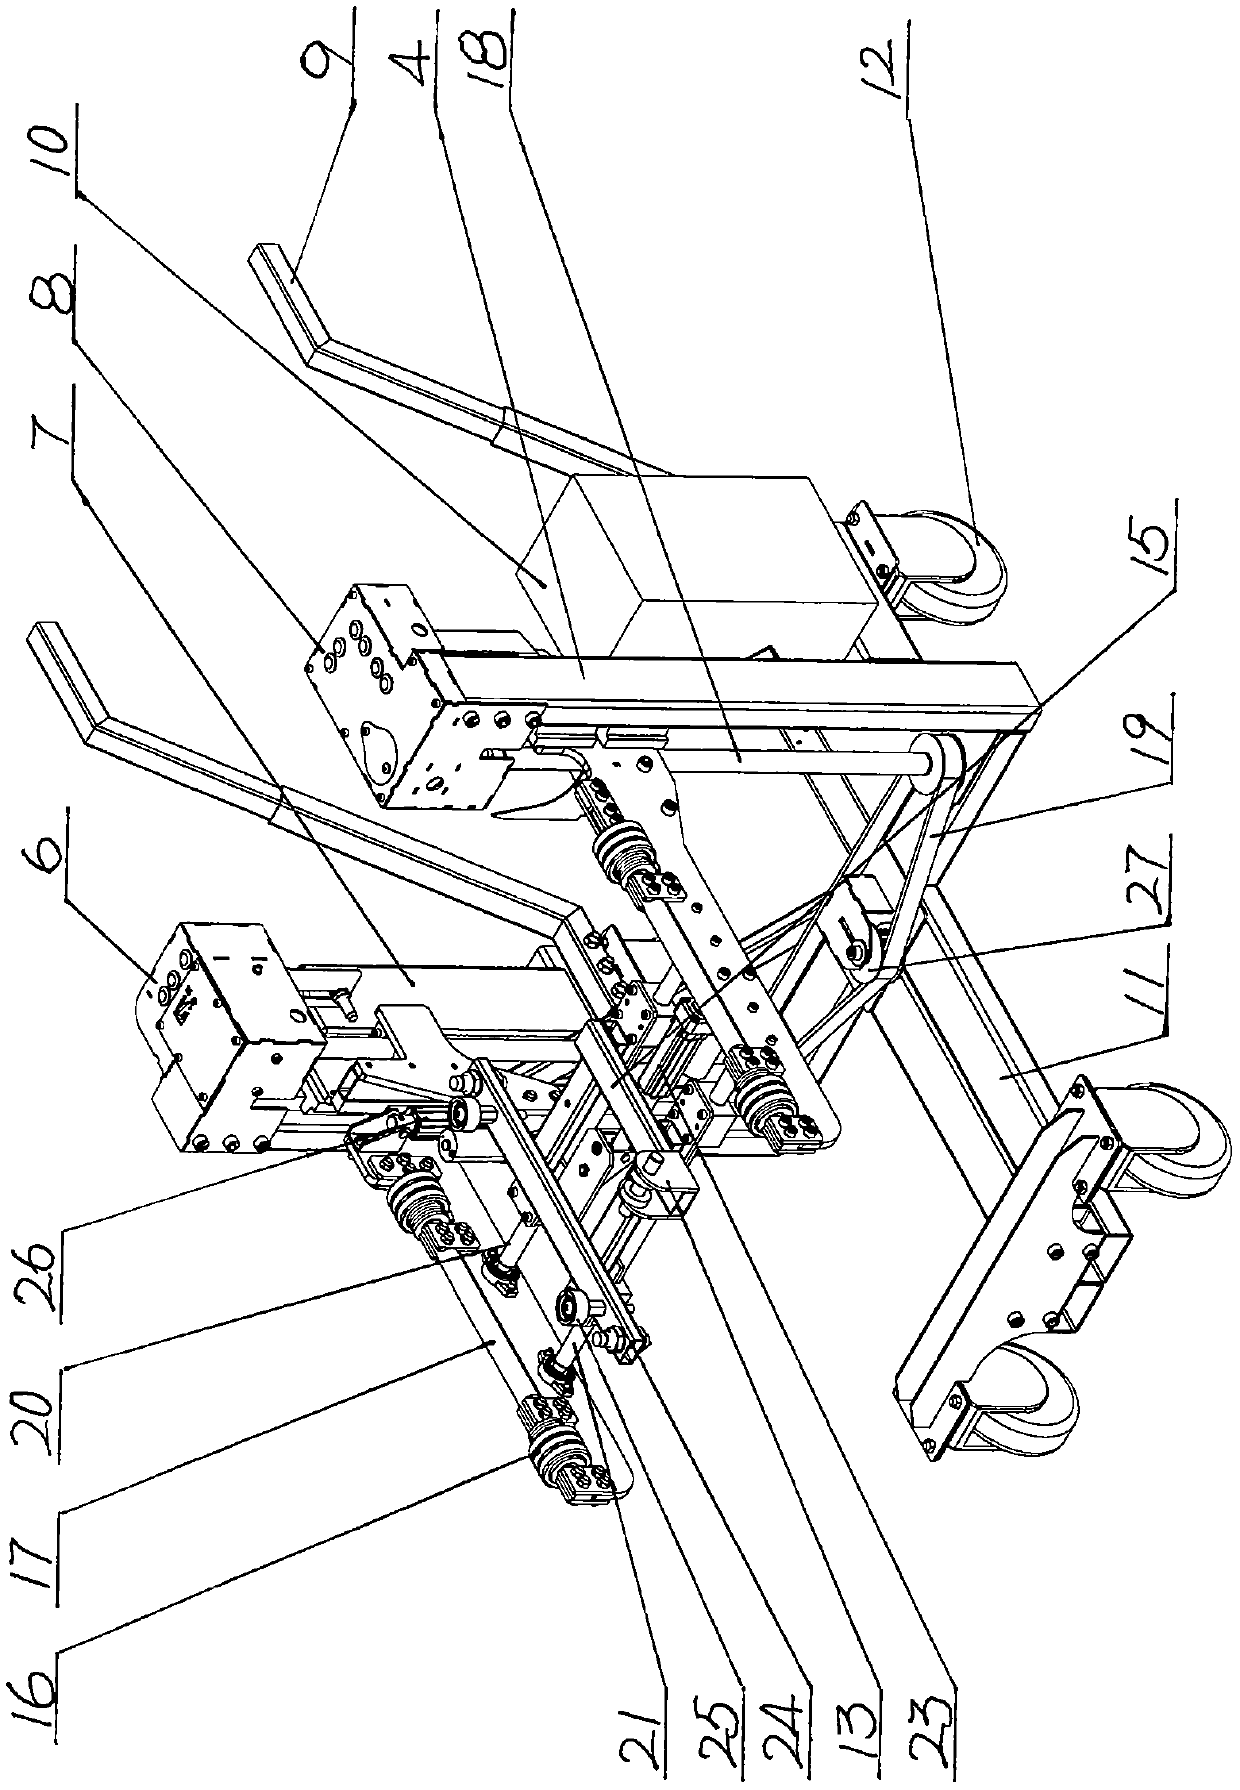 Switch cabinet circuit breaker transferring trolley